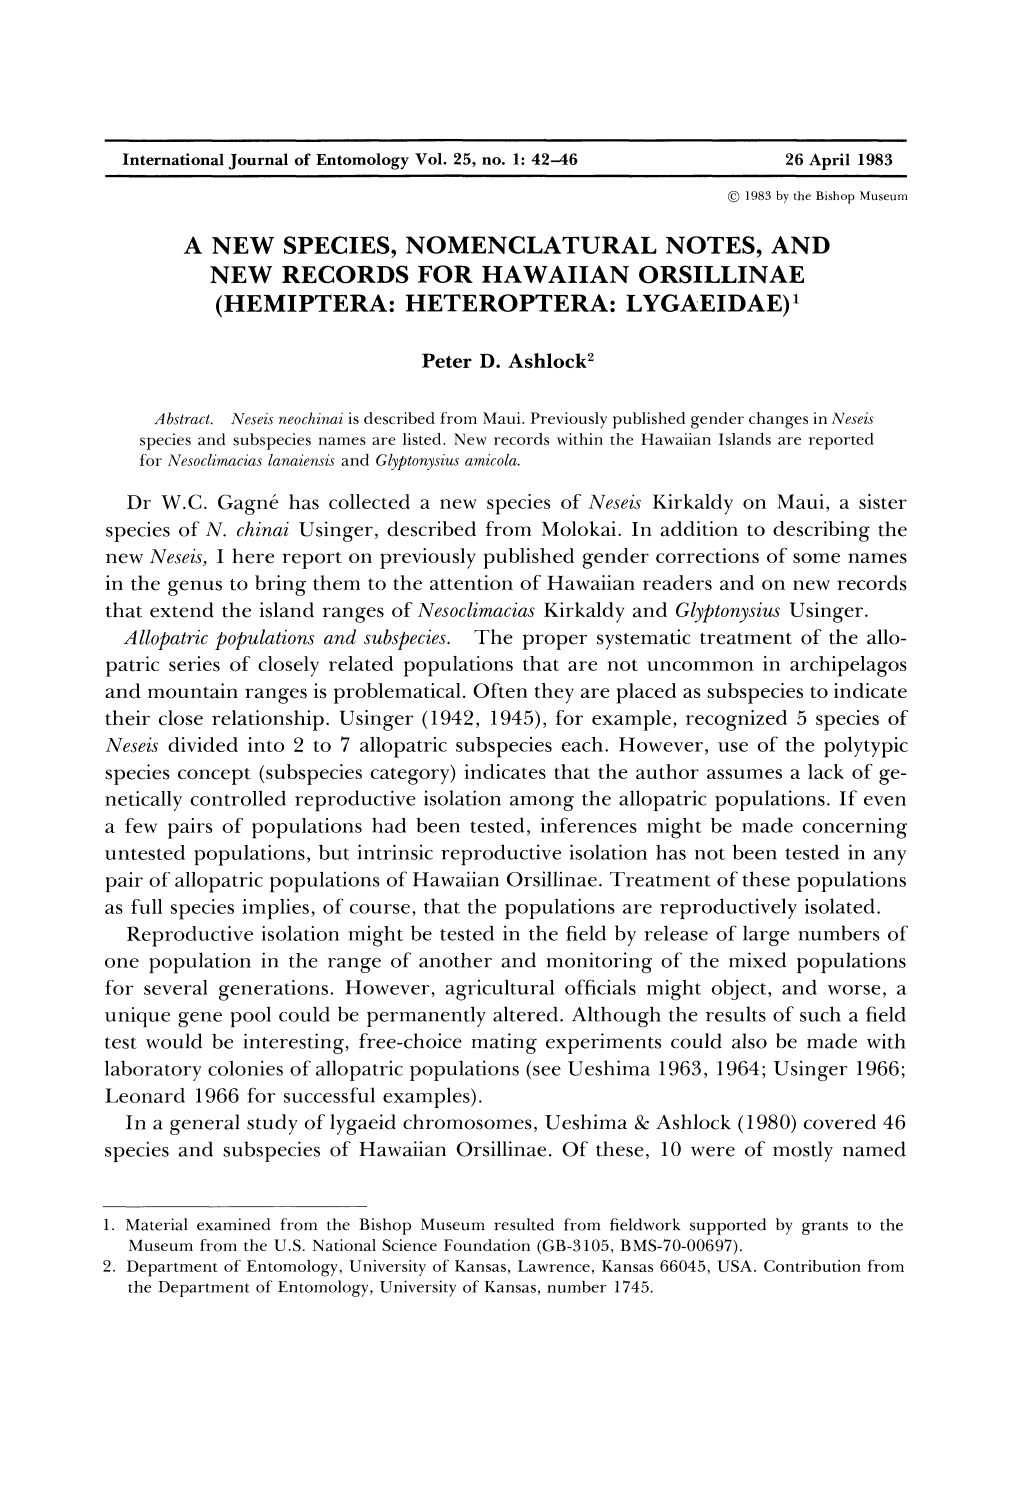 A New Species, Nomenclatural Notes, and New Records for Hawaiian Orsillinae (Hemiptera: Heteroptera: Lygaeidae)1